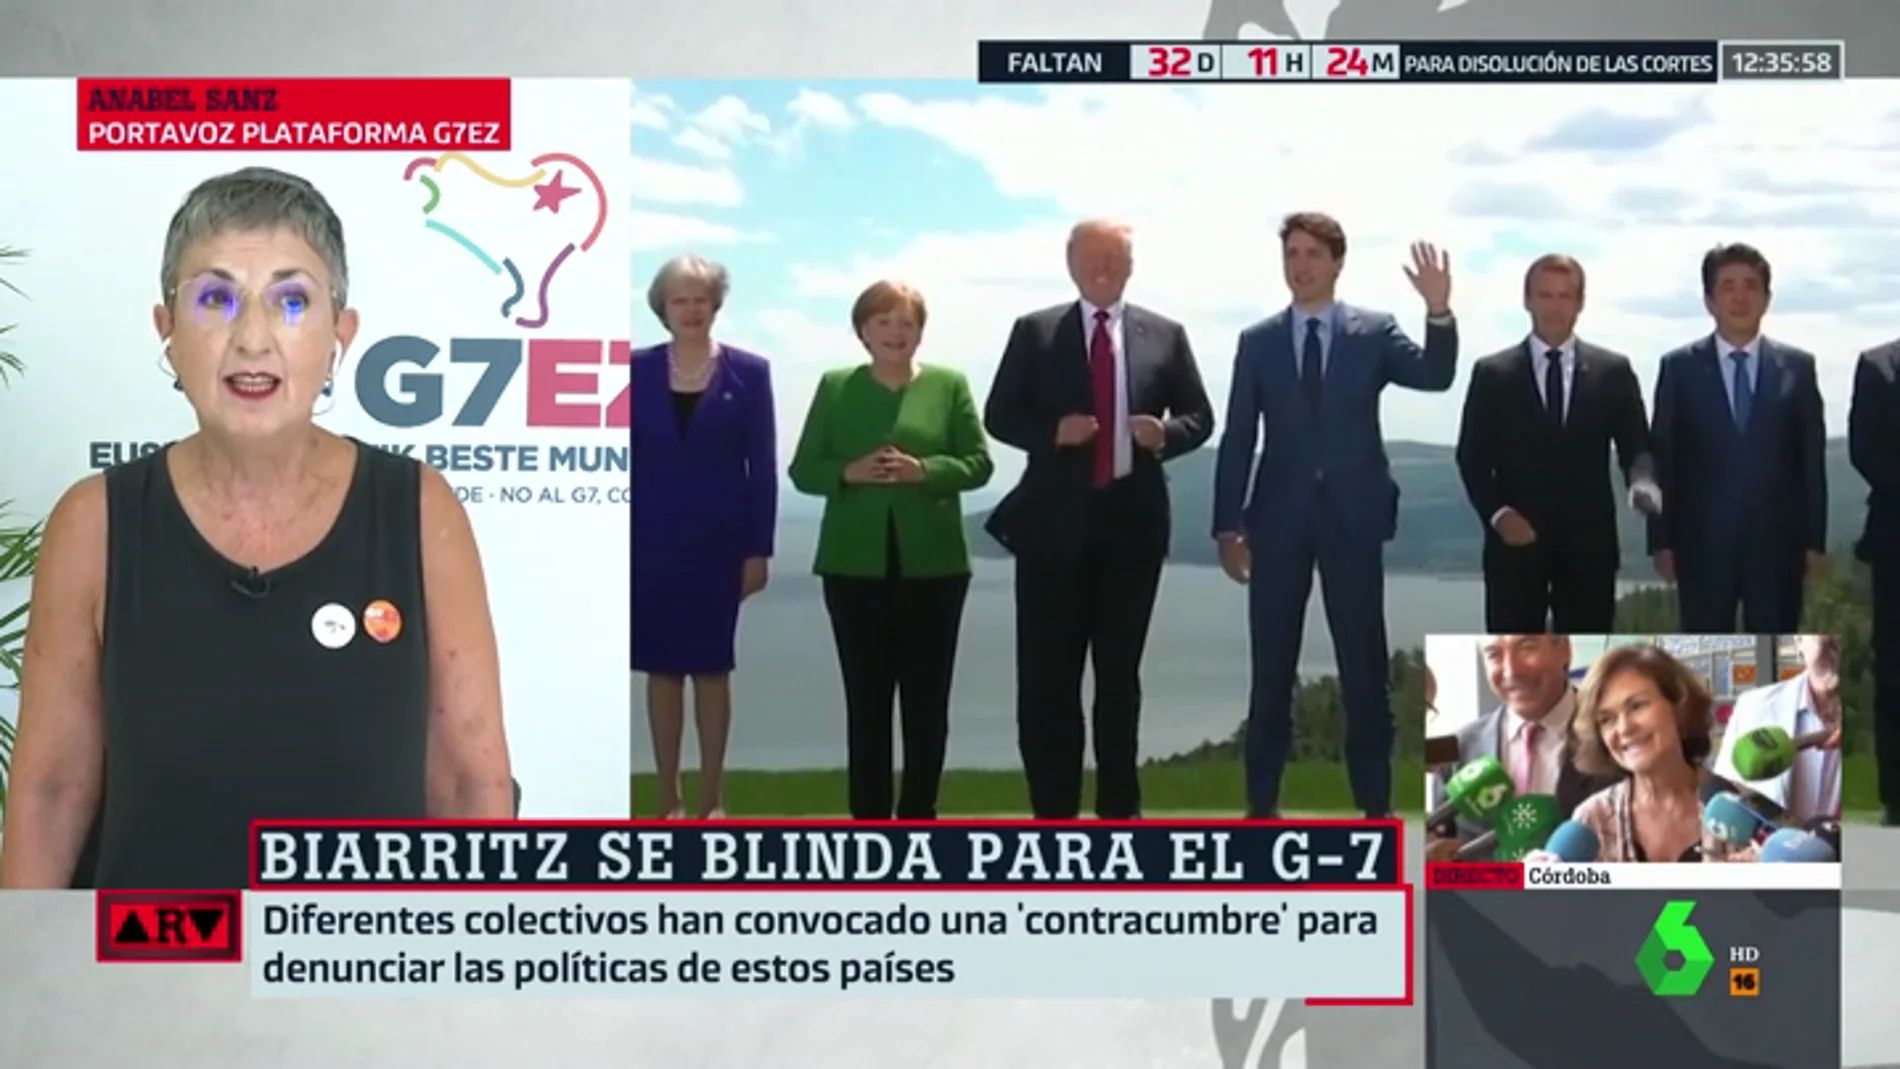 Voces críticas contra la cumbre del G7: "Defiende un modelo político que va contra el planeta y la igualdad"